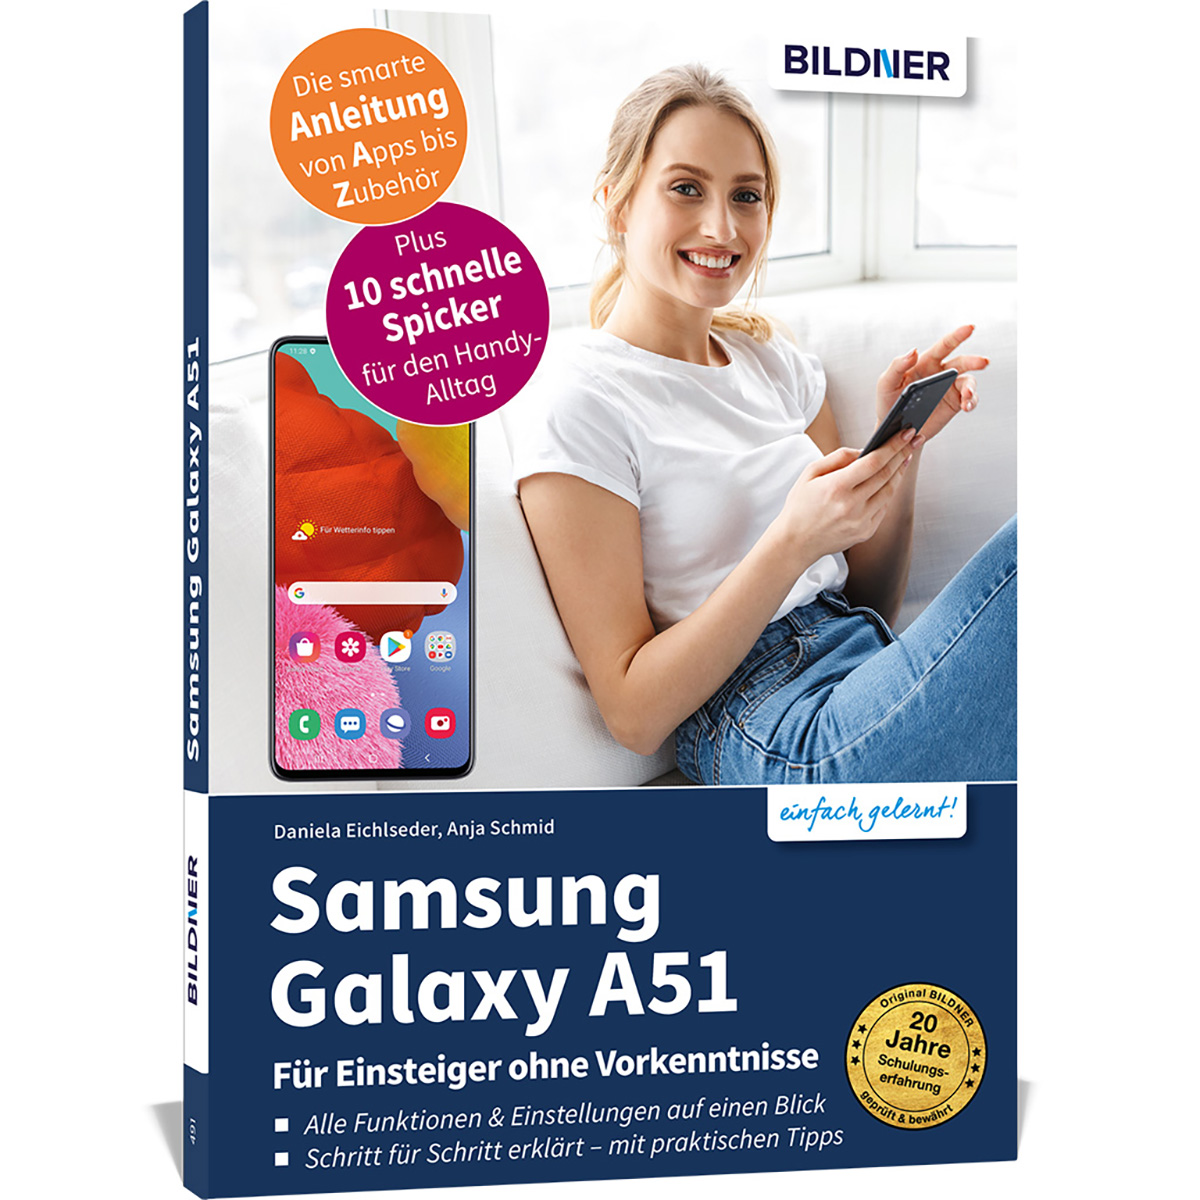 Galaxy A51 Für Vorkenntnisse - Samsung ohne Einsteiger